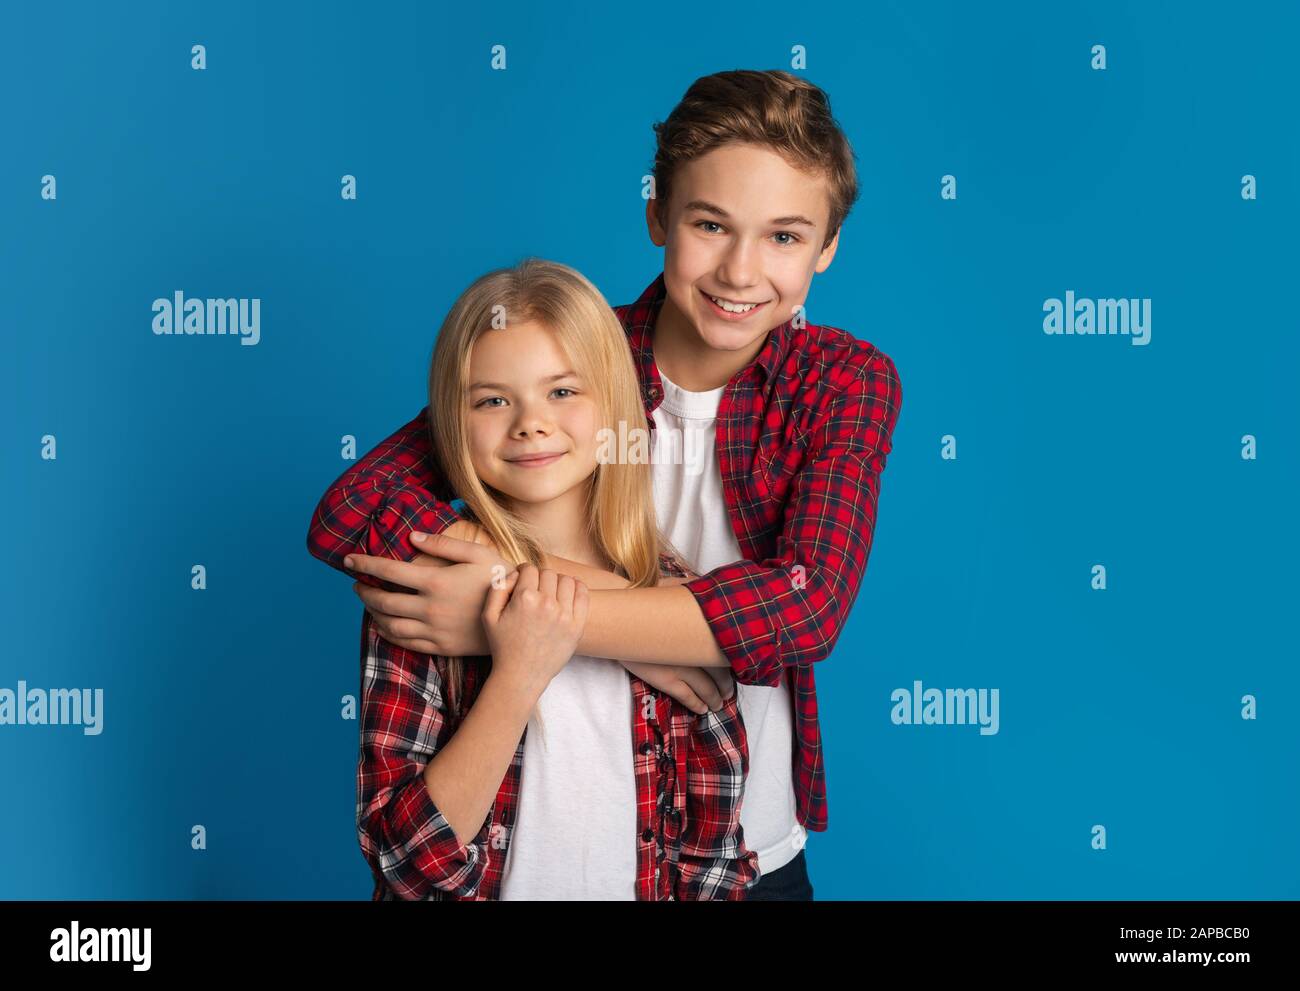 Glückliche Geschwister, Bruder und Schwester umarmen und posieren über blauem Hintergrund Stockfoto